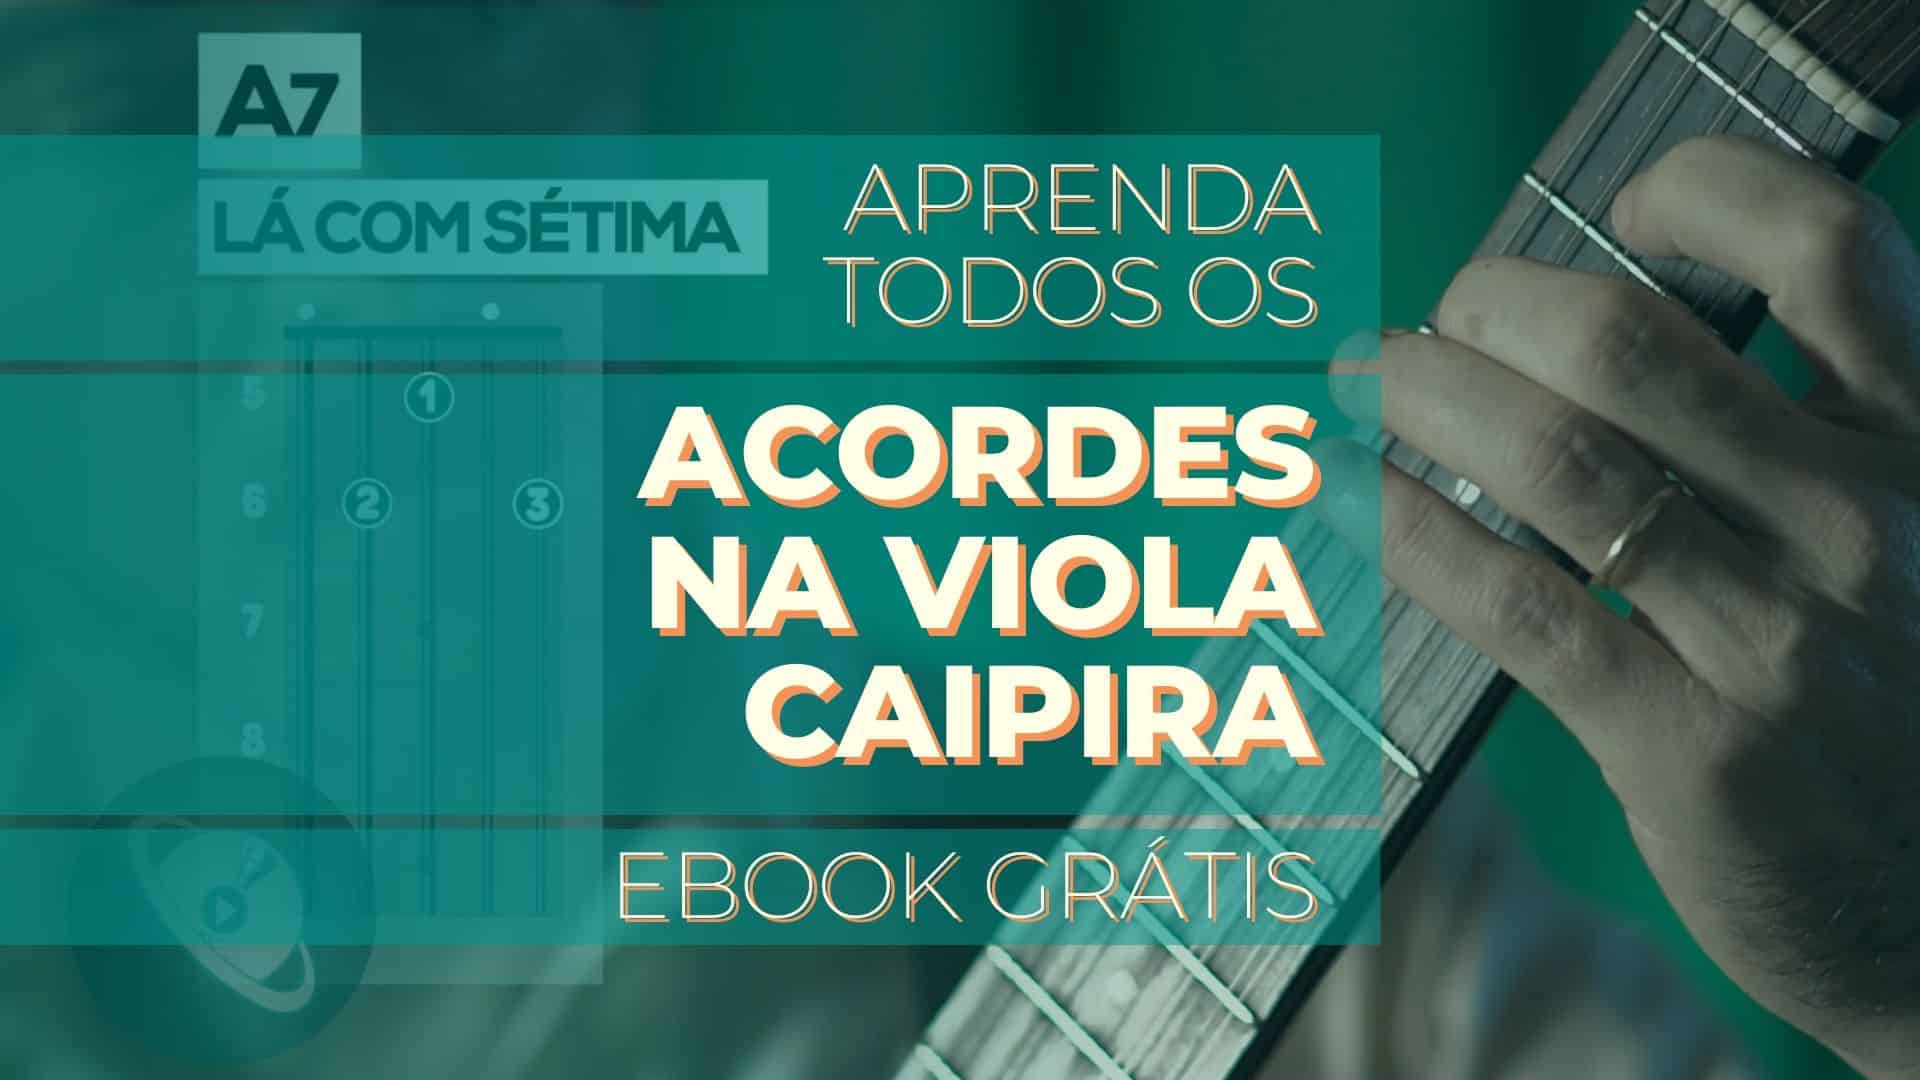 Aprenda todos os acordes de viola caipira em um E-book grátis.